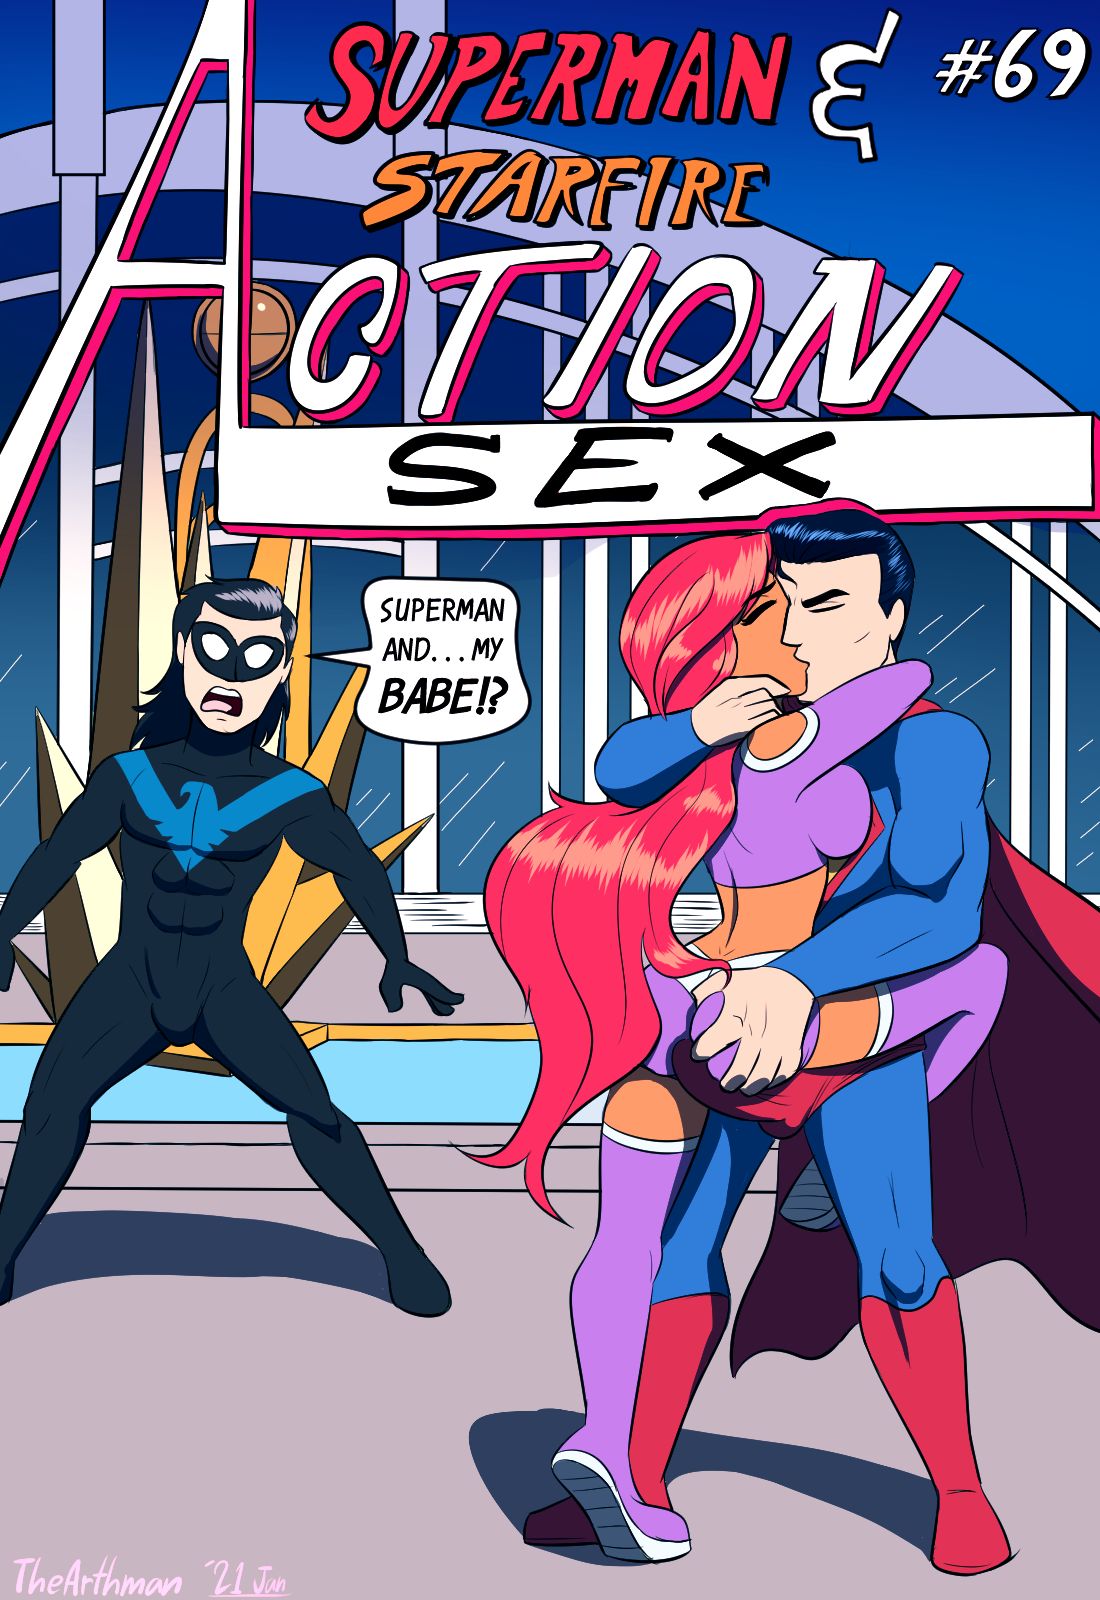 SureFap xxx porno Justice League - [The Arthman] - Action Sex